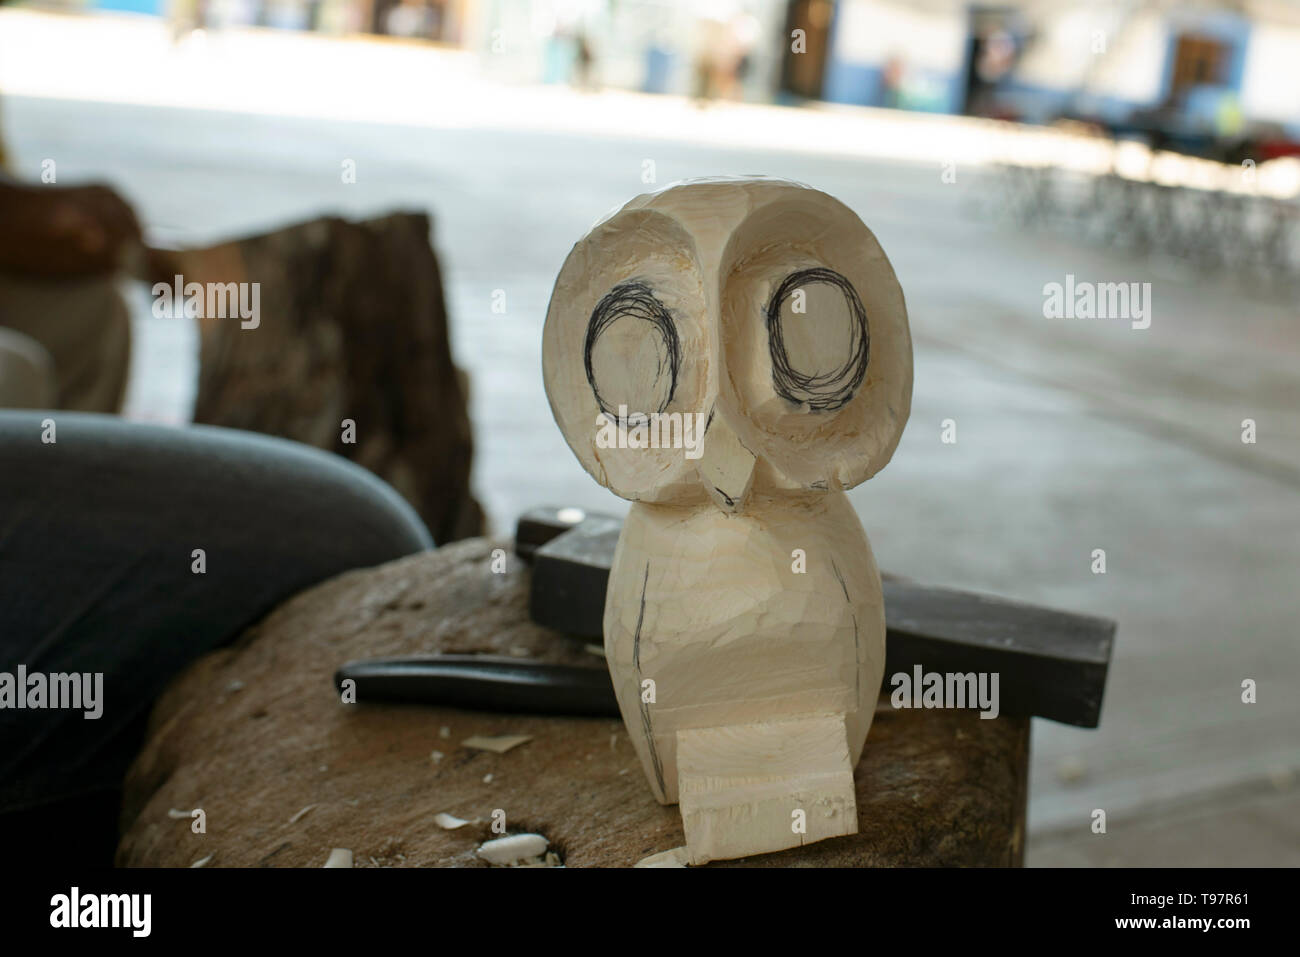 Owl sculpture dans les décisions. Alebrijes sont rêve surréaliste créations en bois, sculpté et peint par les sections locales. San Martín Tilcajete, Oaxaca, Mexique Banque D'Images